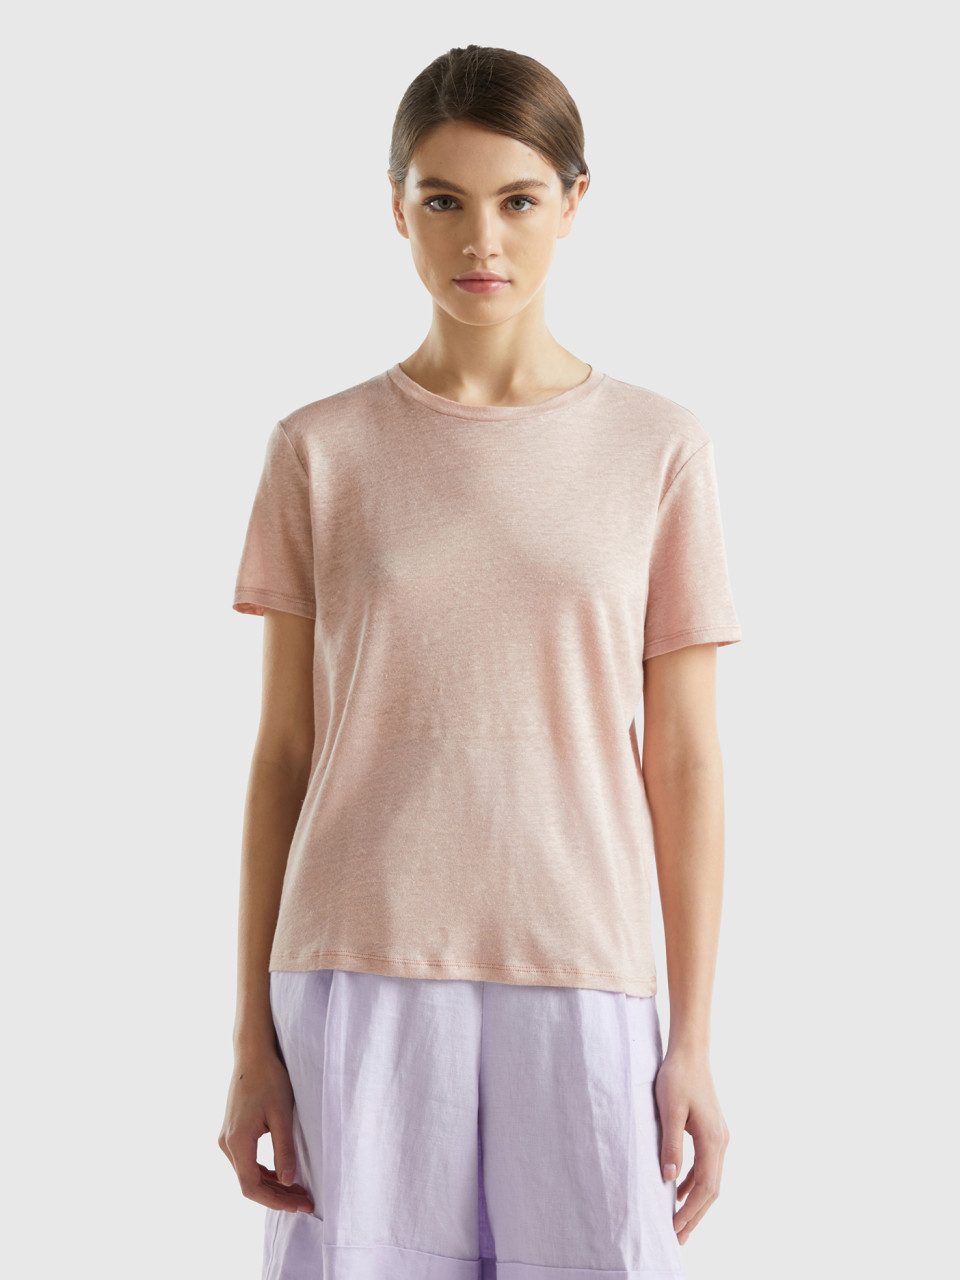 Benetton, Crew Neck T-shirt In Pure Linen, Soft Pink, Women